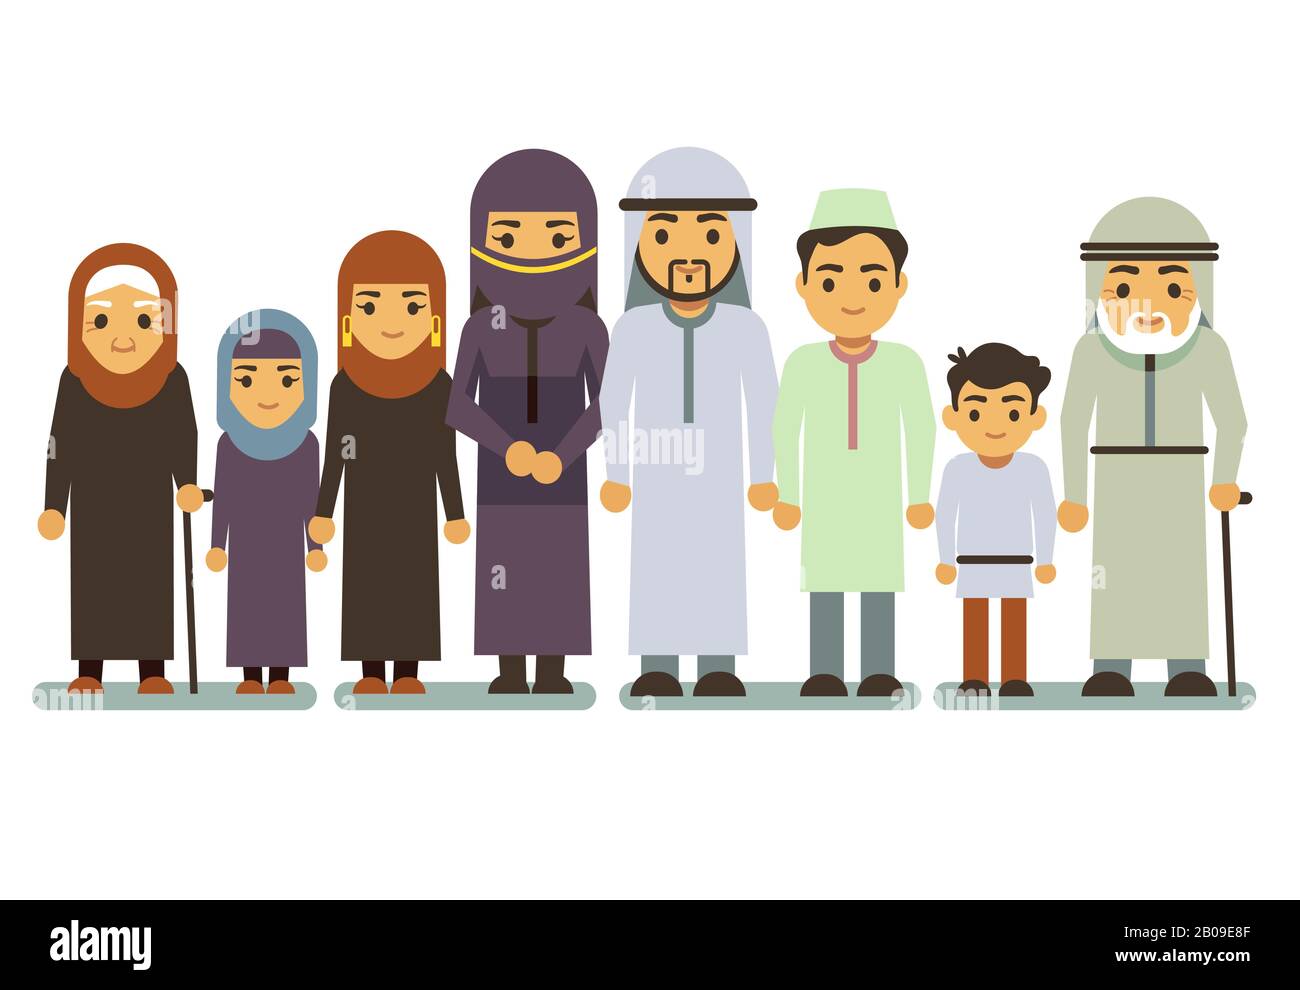 Arabisch glücklich lächelnde Familienvektor-Charaktere. Islamische Eltern, saudi-arabischer Mann, Frau, Kinder, Teenager. Islamische Familienparens und Kinder, Illustration der großen muslimischen Familie Stock Vektor